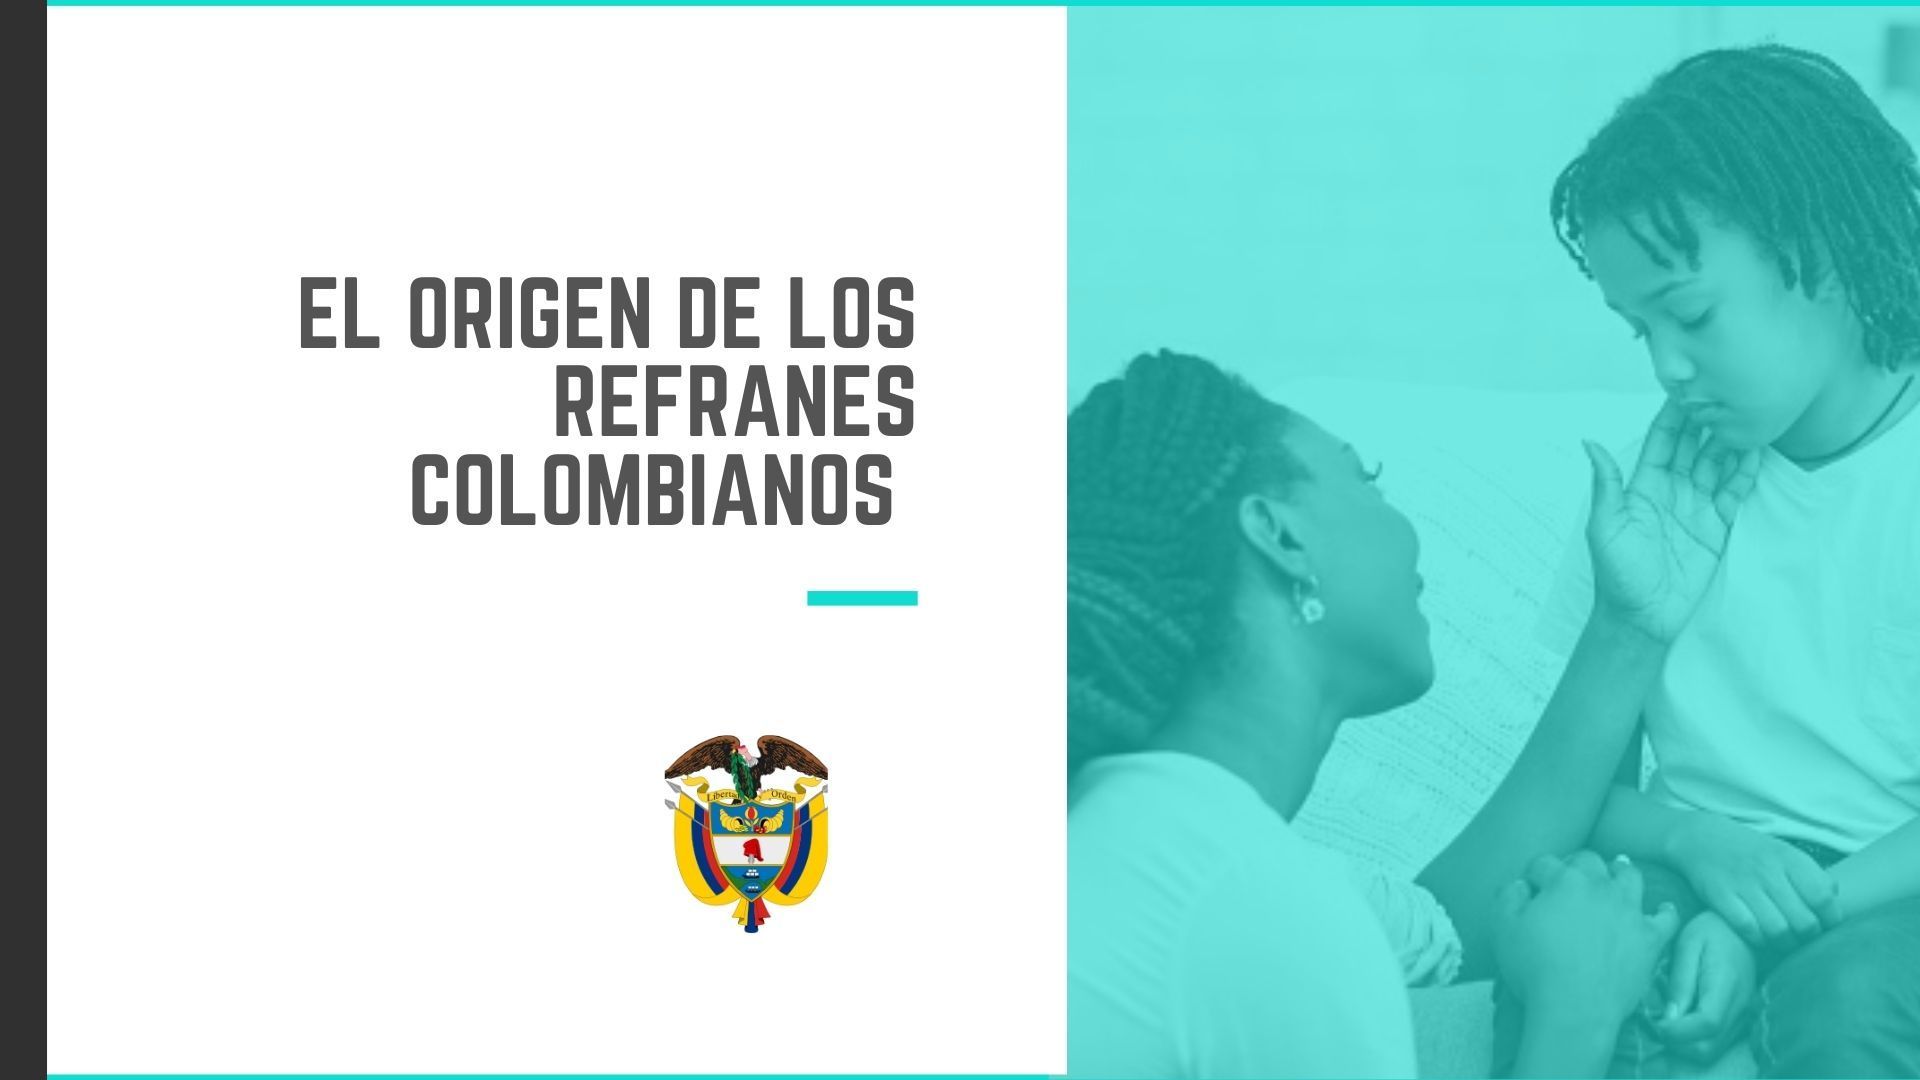 El origen de los refranes colombianos